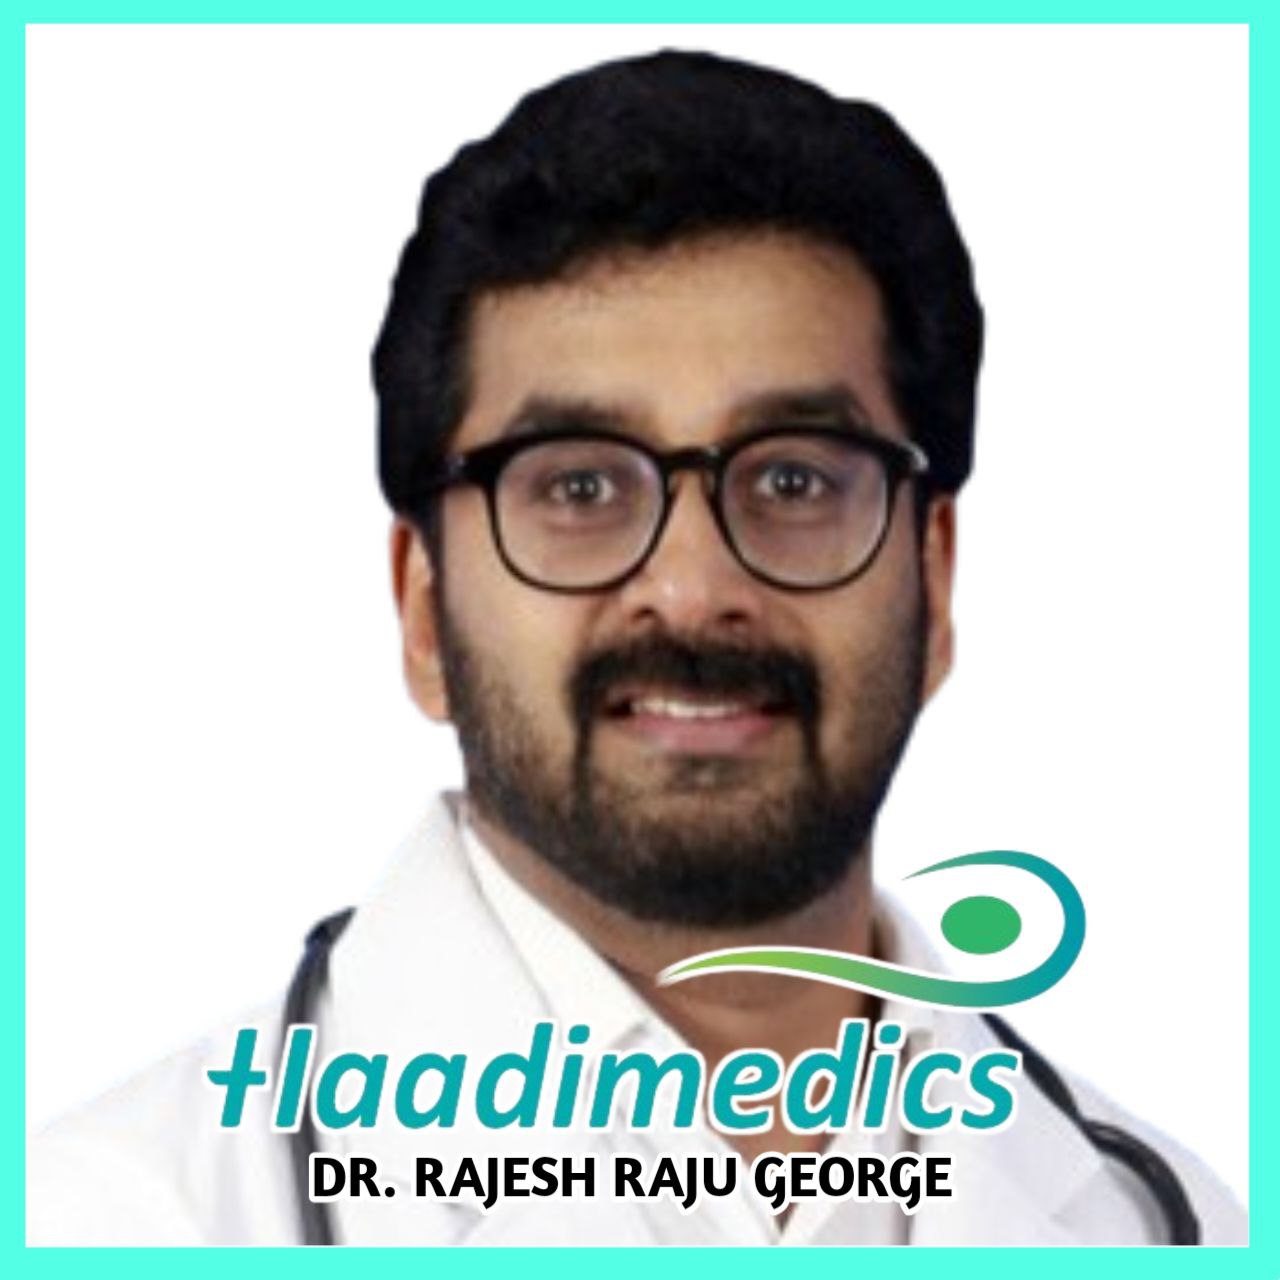 Dr. Rajesh Raju George